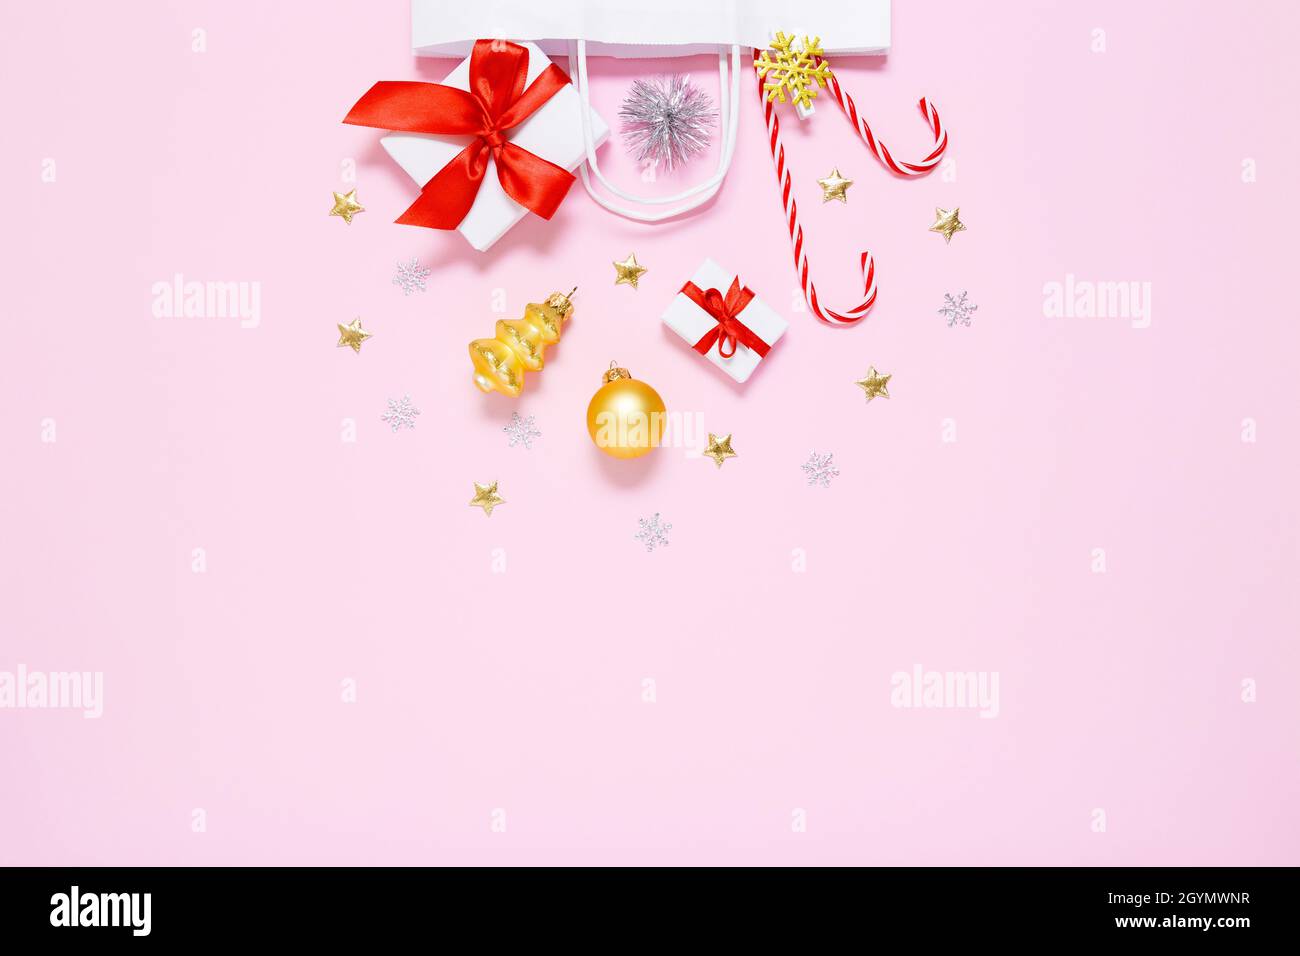 Natale, composizione di Capodanno. Borsa di carta bianca con regali, caramelle dolci, decorazioni per le vacanze, palle d'oro, stelle con glitter a base di pastello p Foto Stock